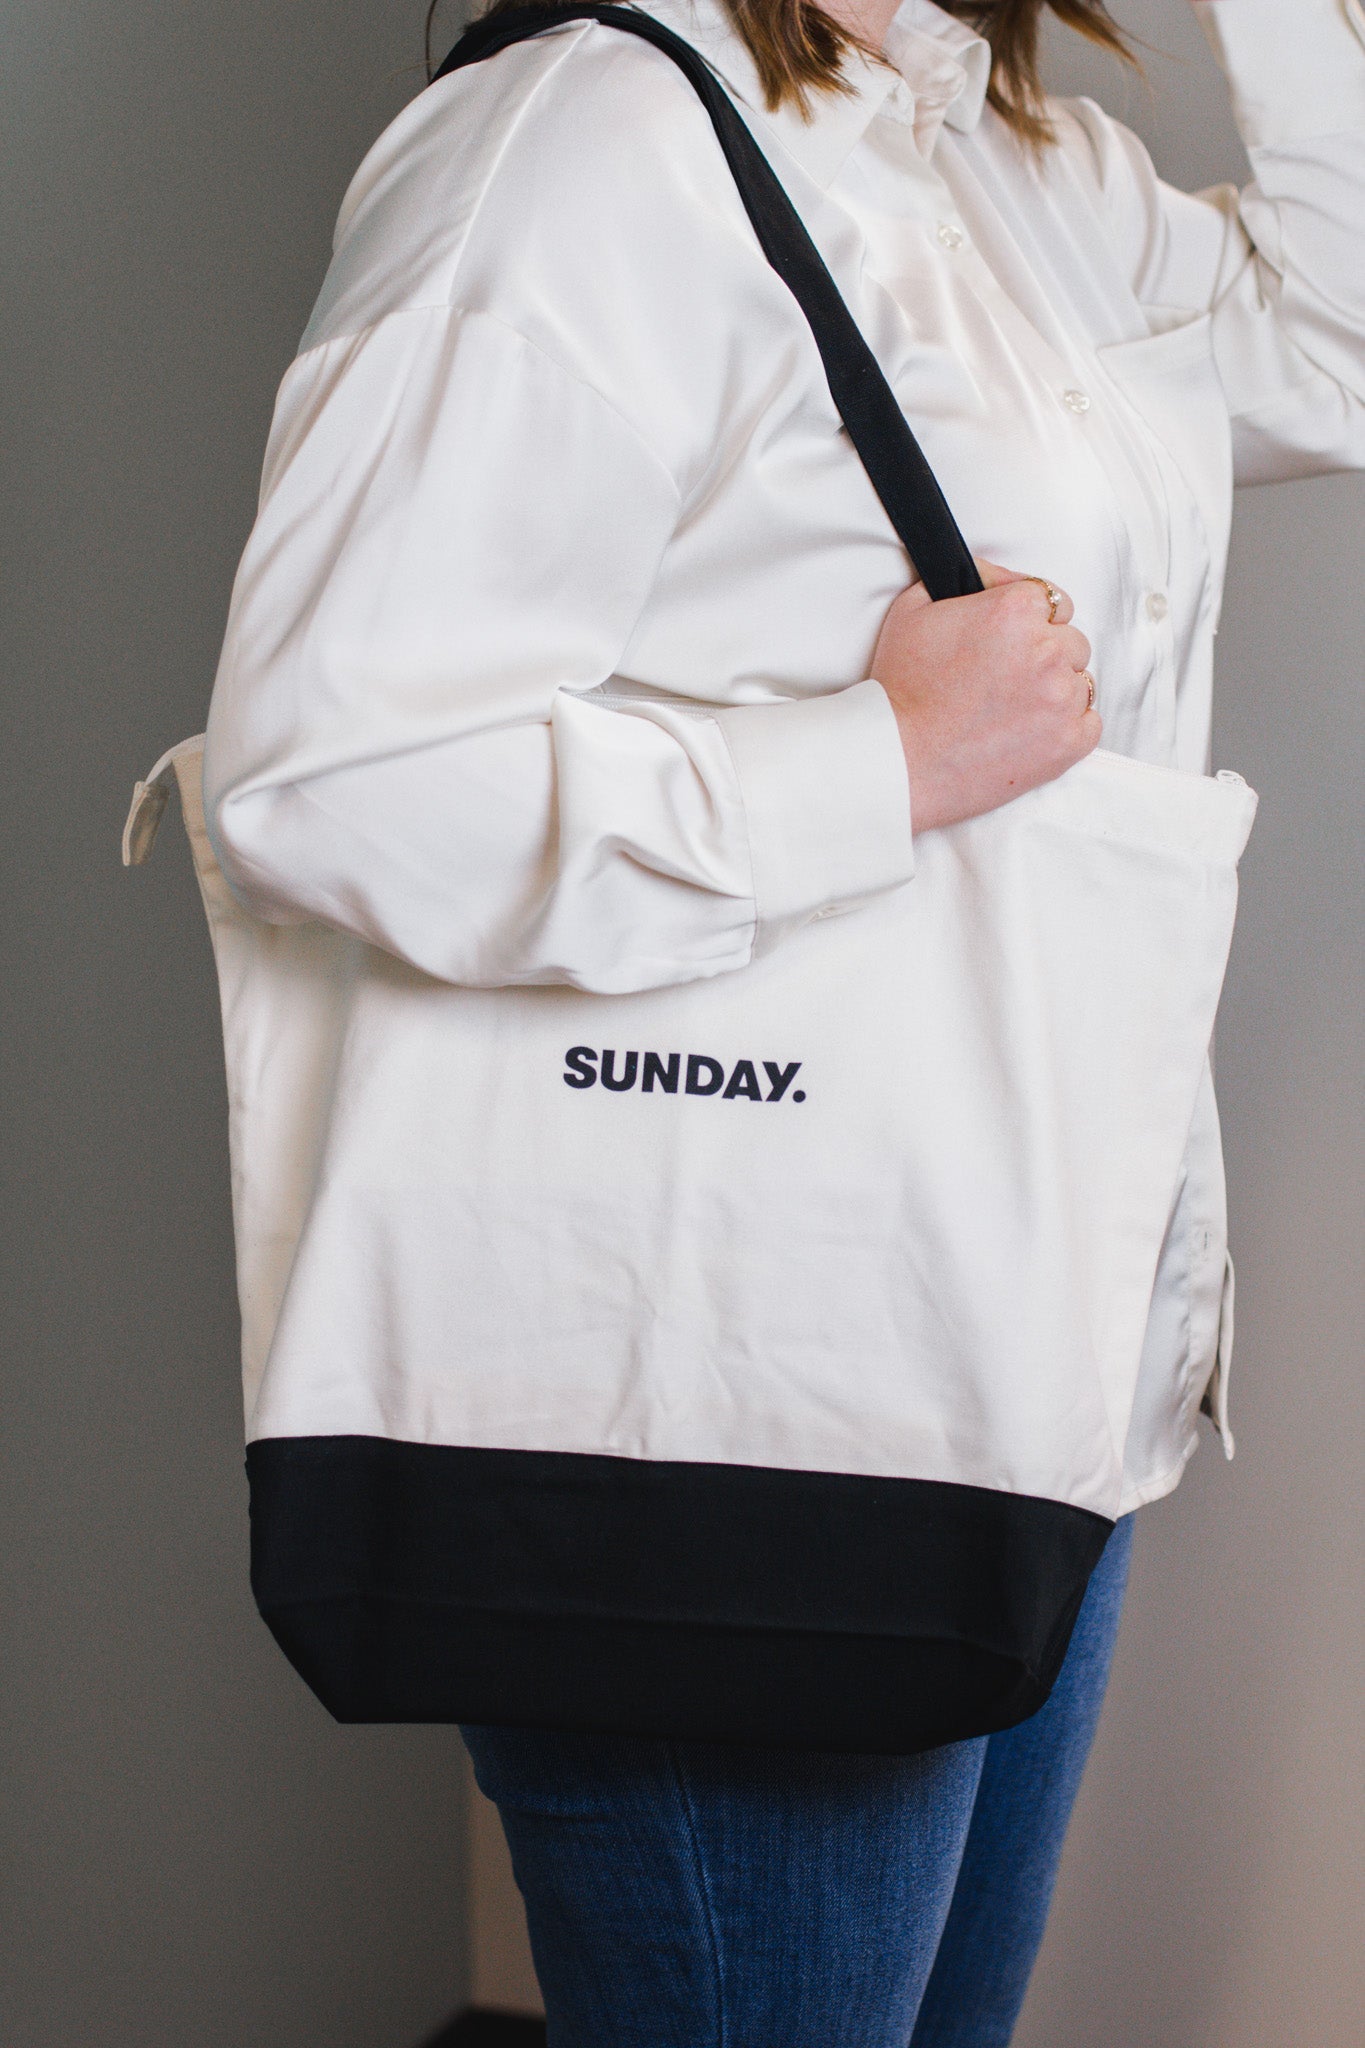 Sunday Tote Bag - Sunday